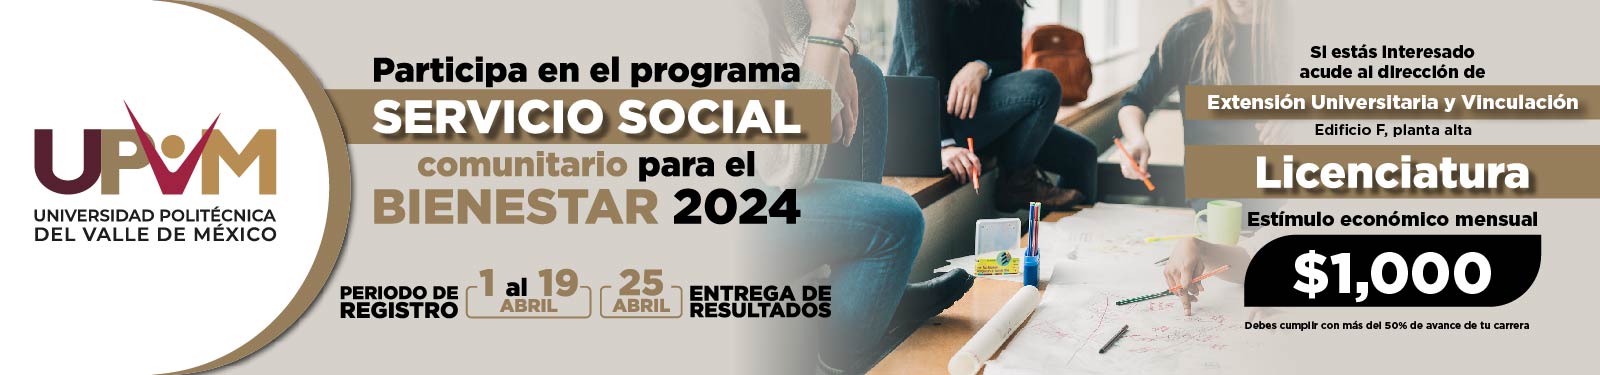 Servicio Social Comunitario para el Bienestar 2024